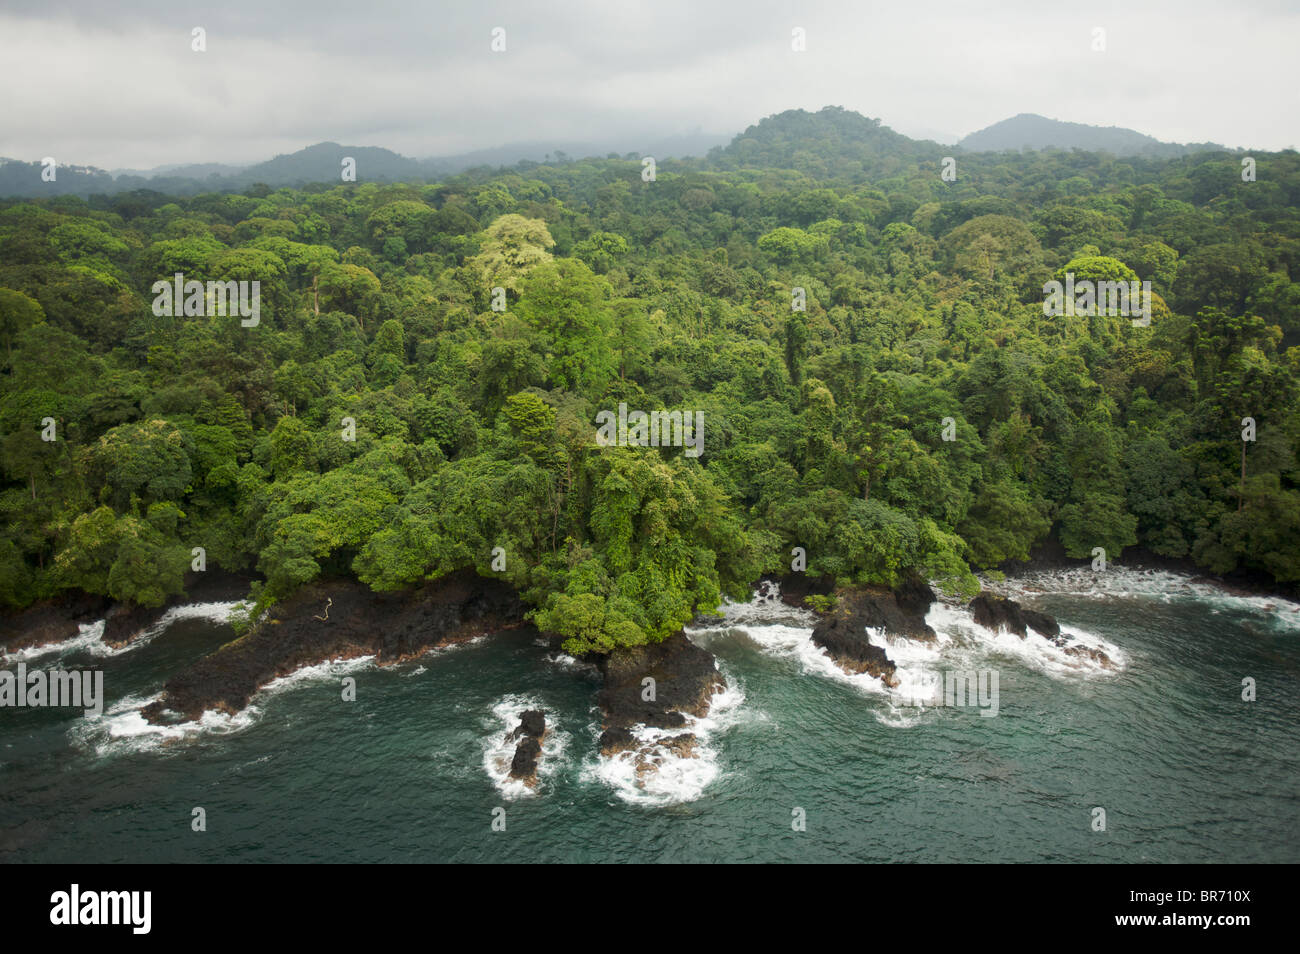 Vista aérea de la bóveda de la selva tropical en la costa sur de la isla de Bioko, Guinea Ecuatorial, Africa Central. Enero de 2008 Foto de stock